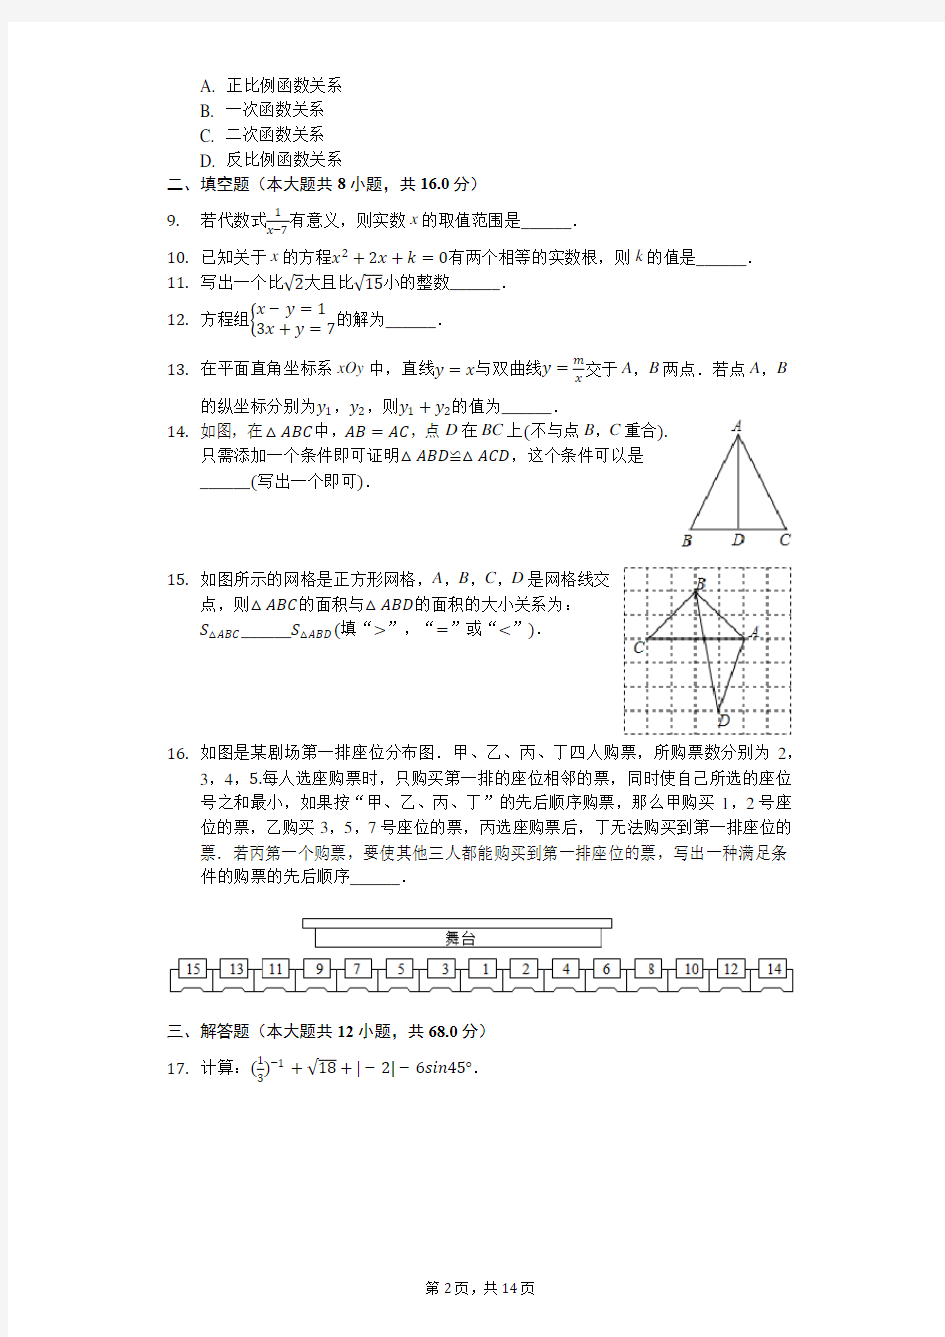 2020年北京市中考数学试卷(有详细解析)